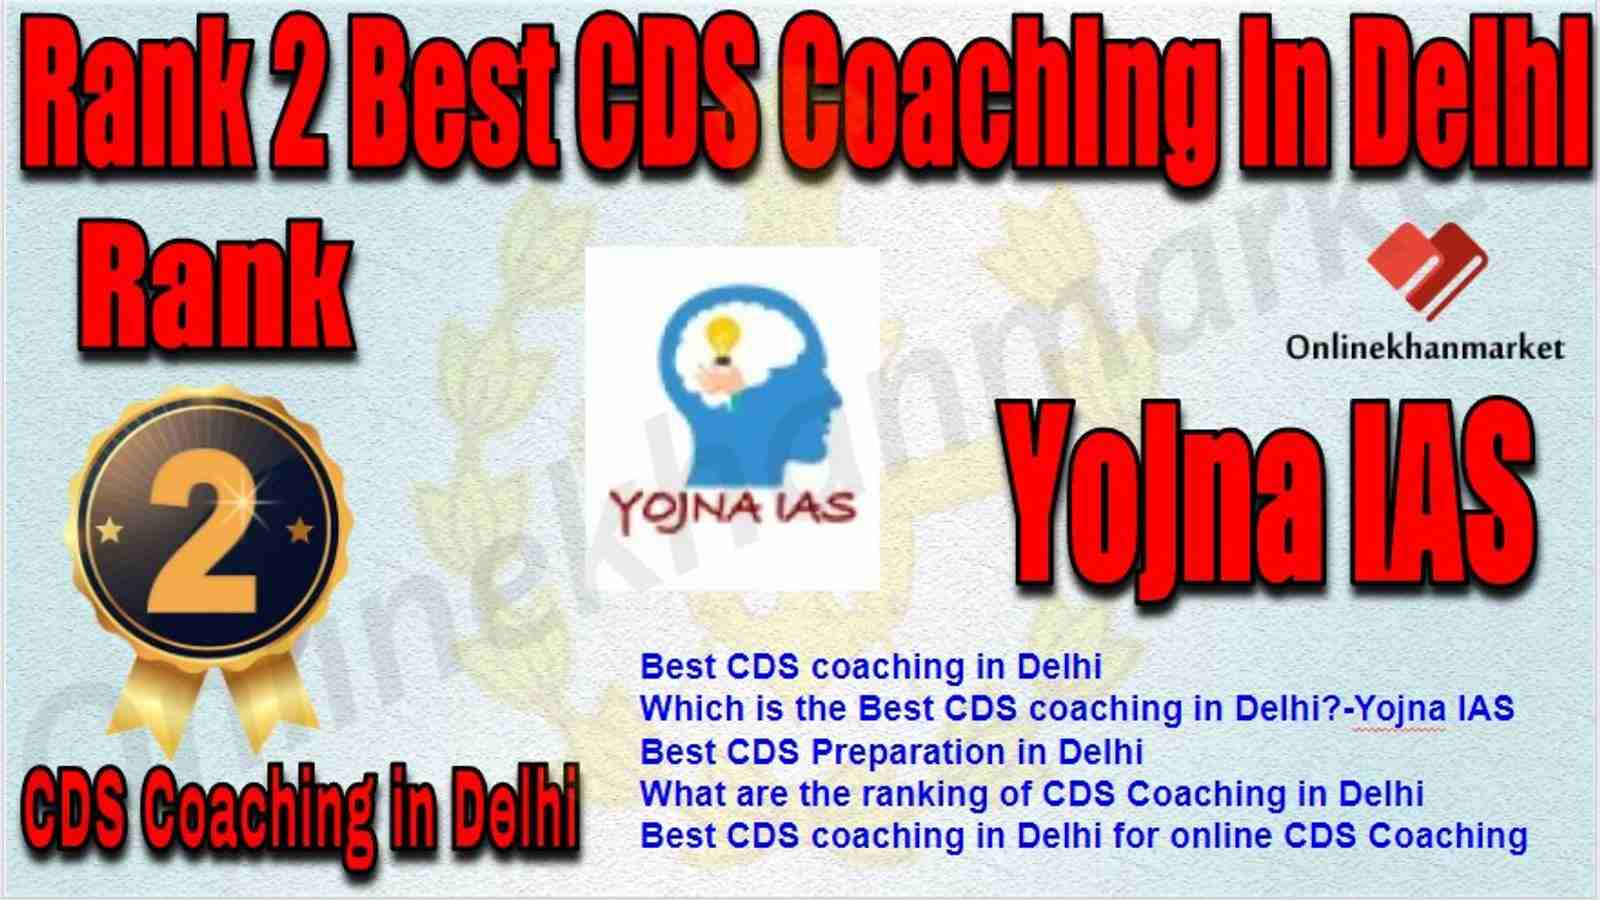 Rank 2 Best CDS Coaching in delhi